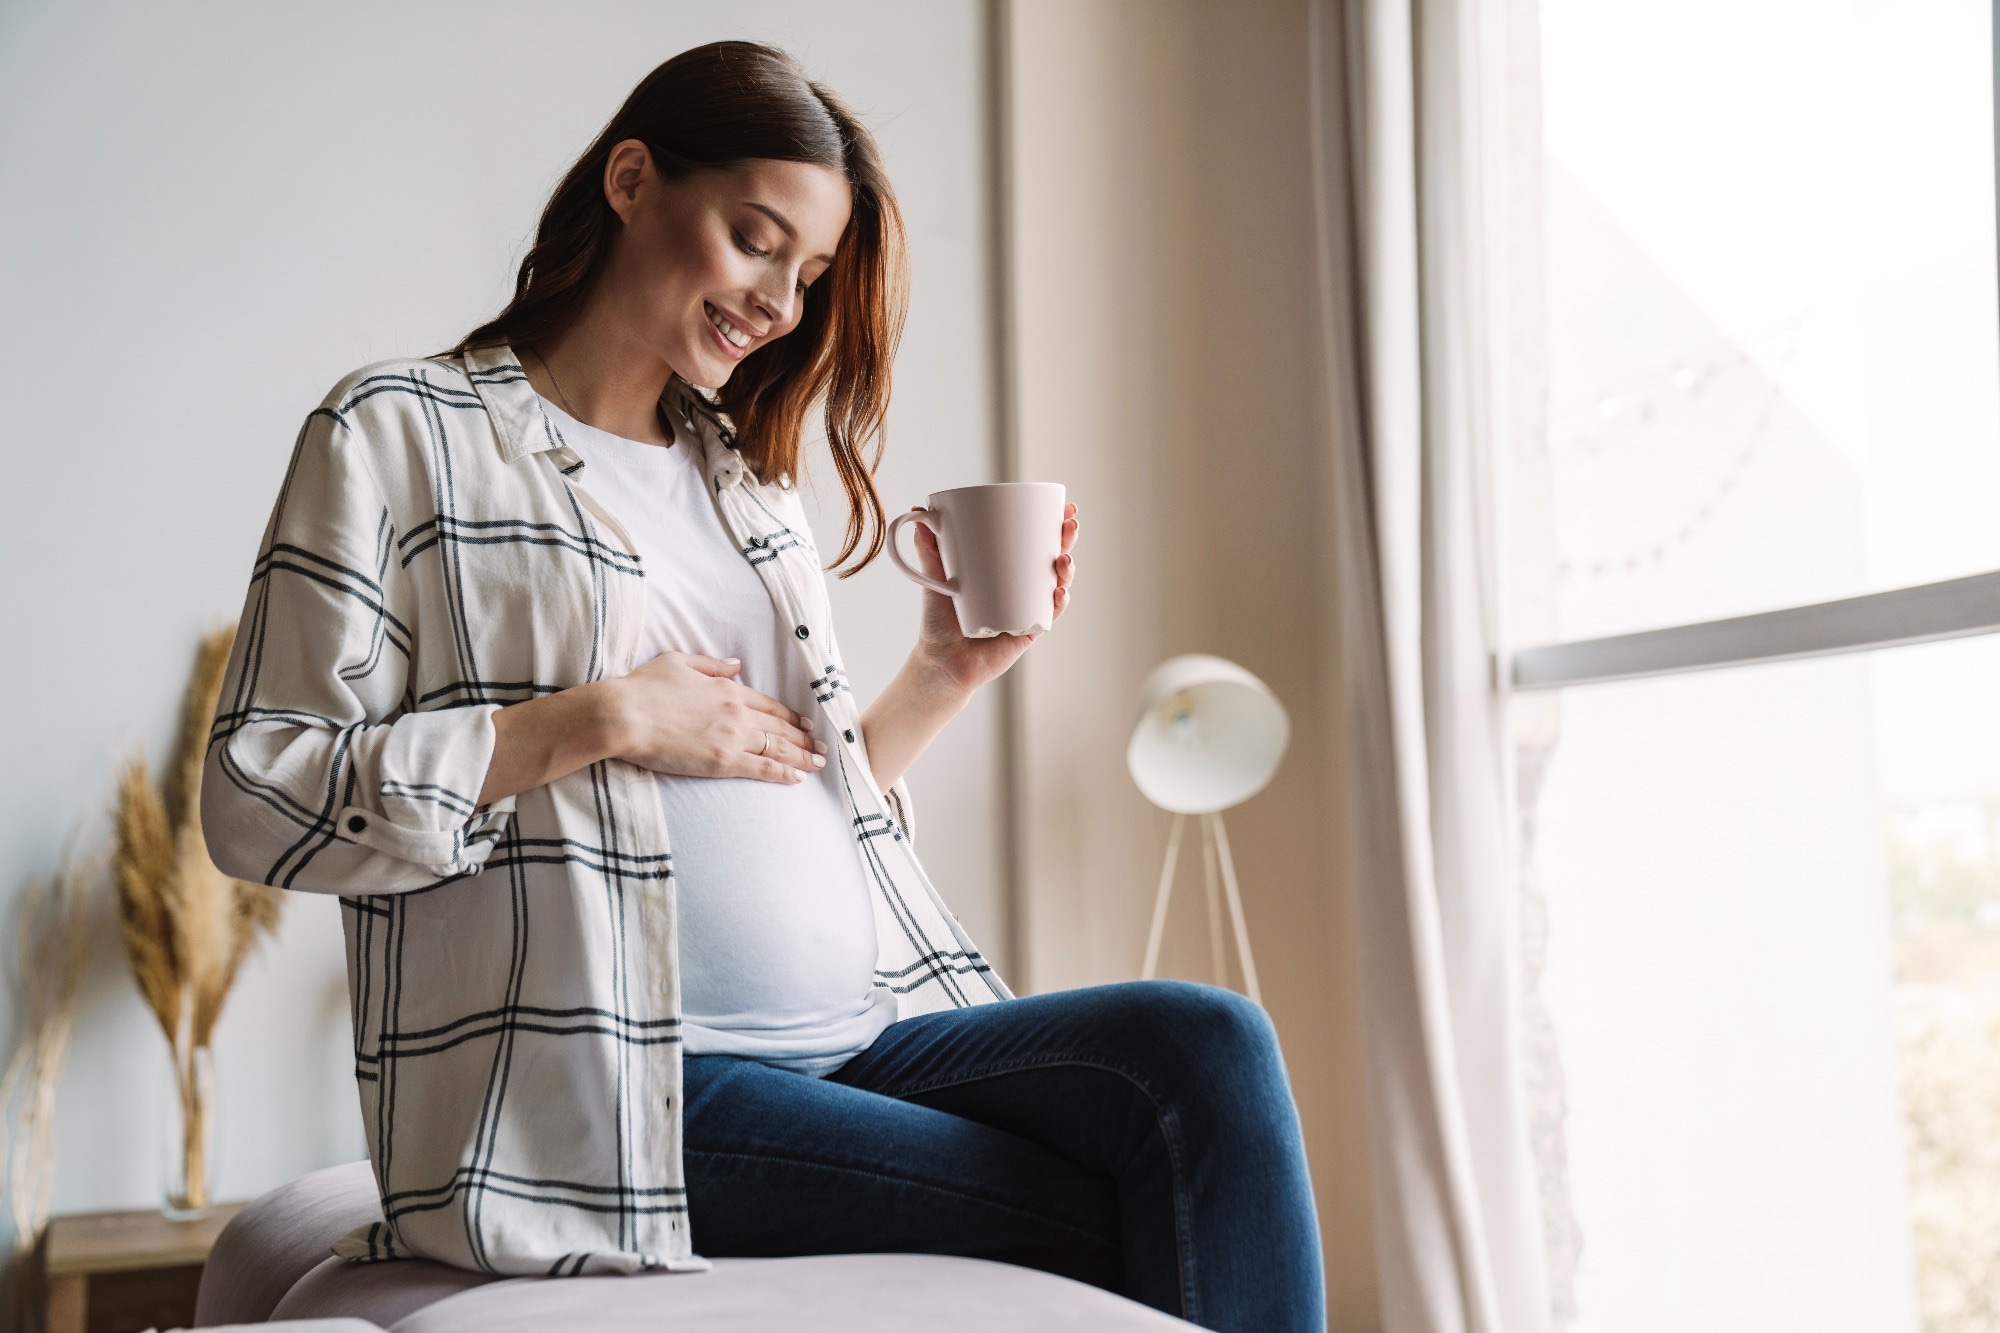 Étude : Une santé mentale maternelle positive pendant la grossesse a un impact sur l'hippocampe et les réseaux cérébraux fonctionnels chez les enfants.  Source de l'image : Dean Drobot / Shutterstock.com